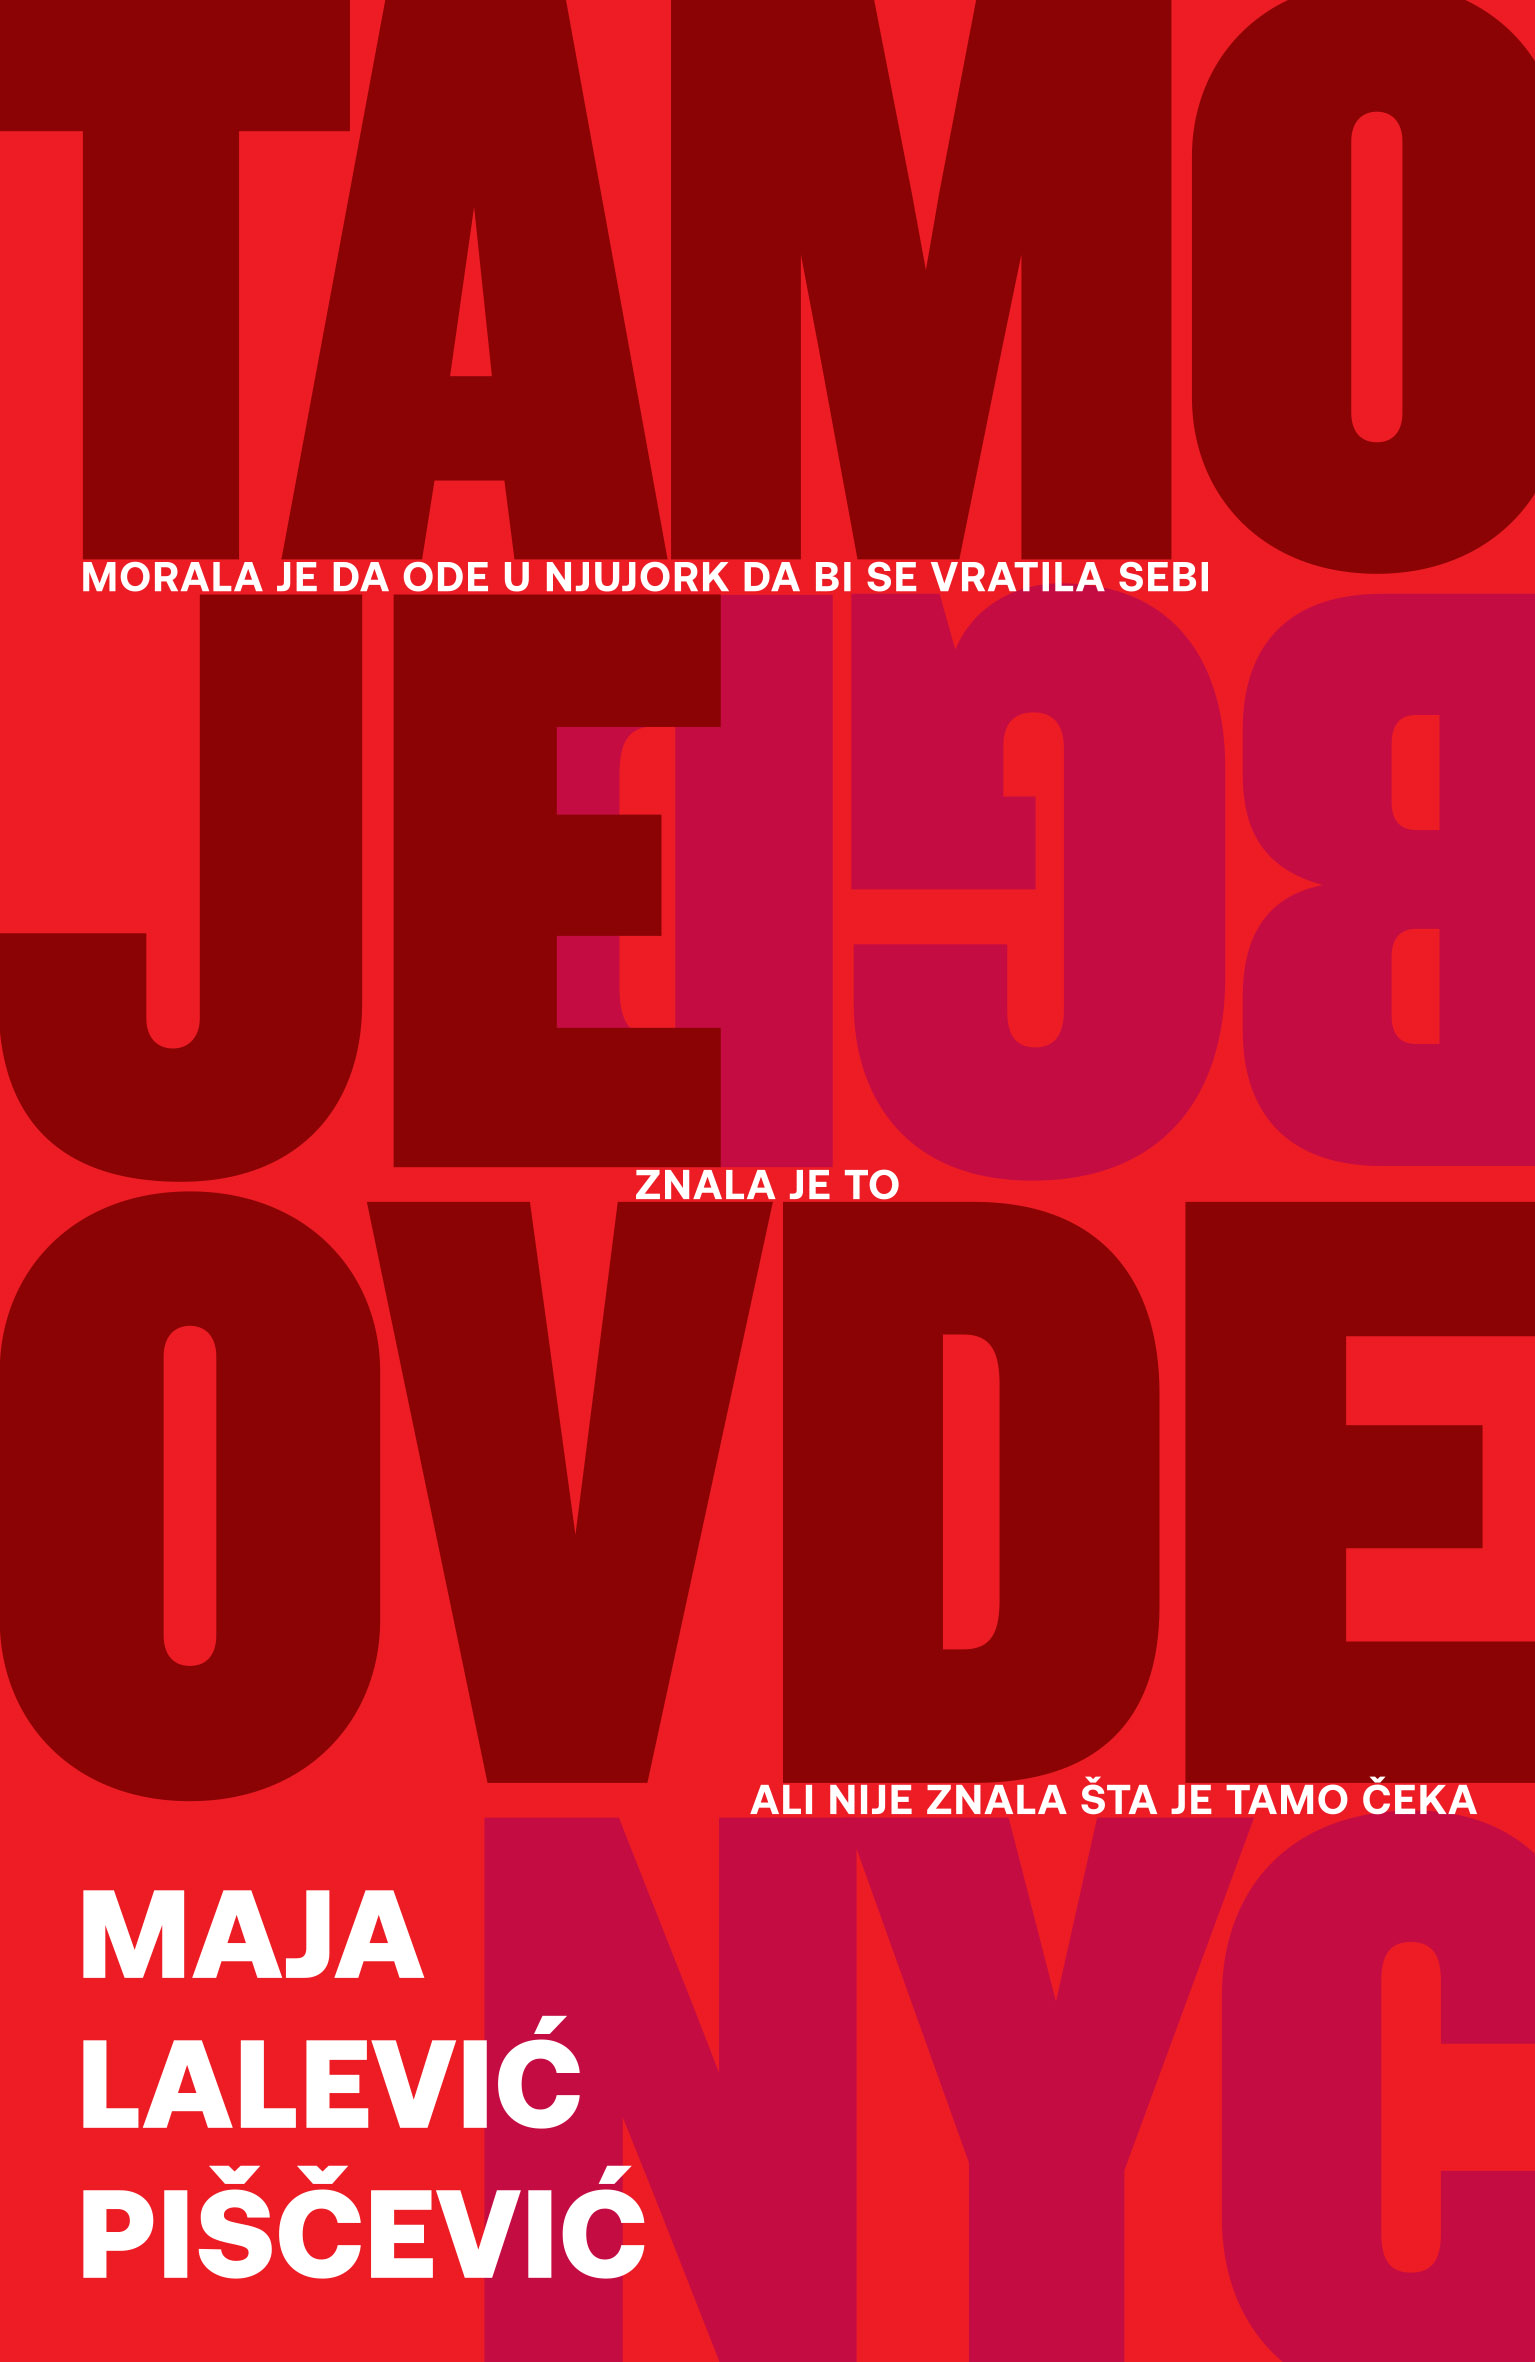 Knjiga priča “Tamo je ovde” Maje Lalević Piščević u knjižarama od 22. marta